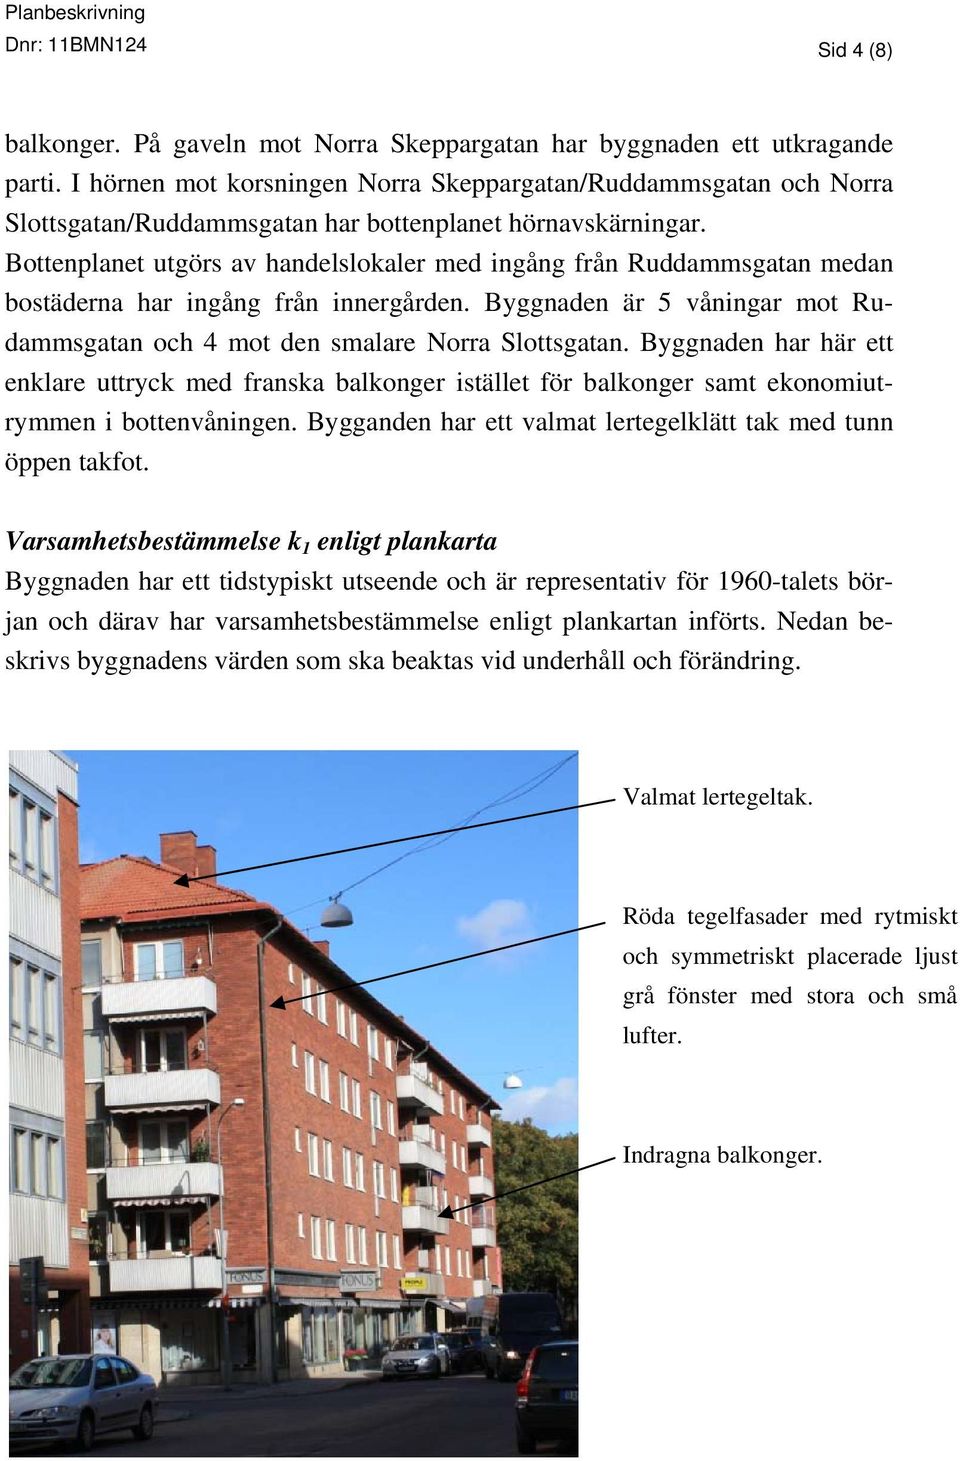 Bottenplanet utgörs av handelslokaler med ingång från Ruddammsgatan medan bostäderna har ingång från innergården. Byggnaden är 5 våningar mot Rudammsgatan och 4 mot den smalare Norra Slottsgatan.